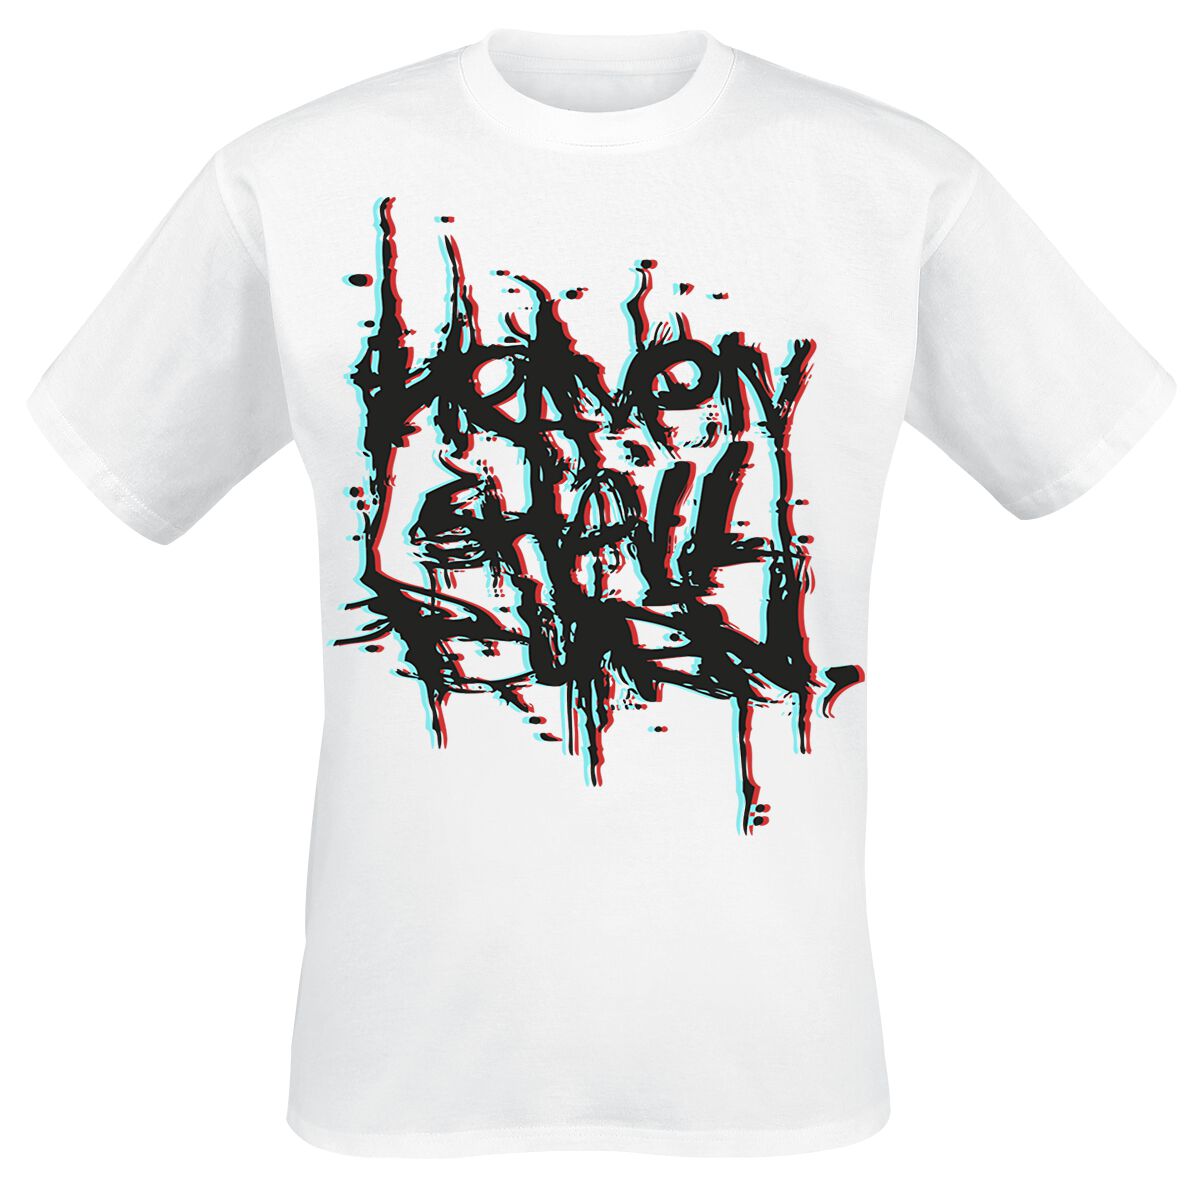 Heaven Shall Burn T-Shirt - 3D Logo - S bis XXL - für Männer - Größe S - weiß  - Lizenziertes Merchandise!